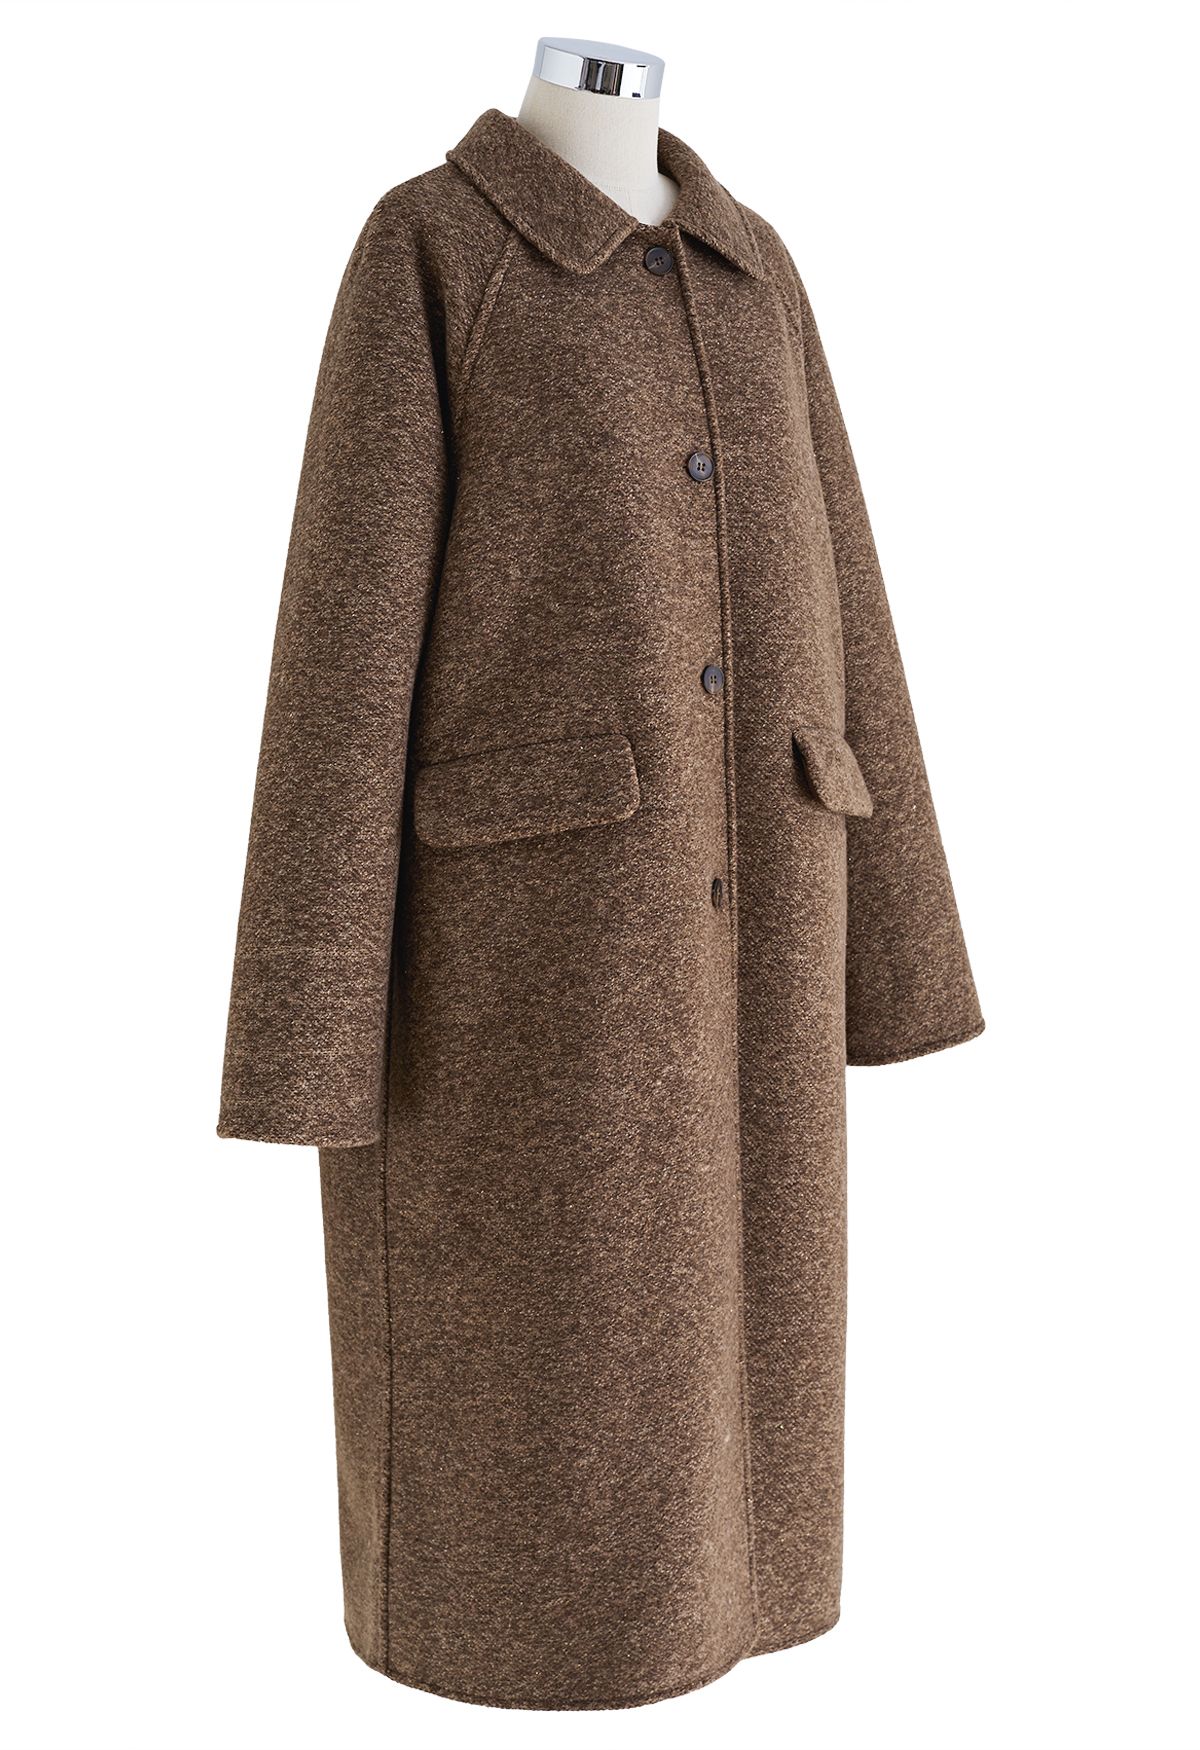 Langer Mantel mit Umhängetasche in Braun